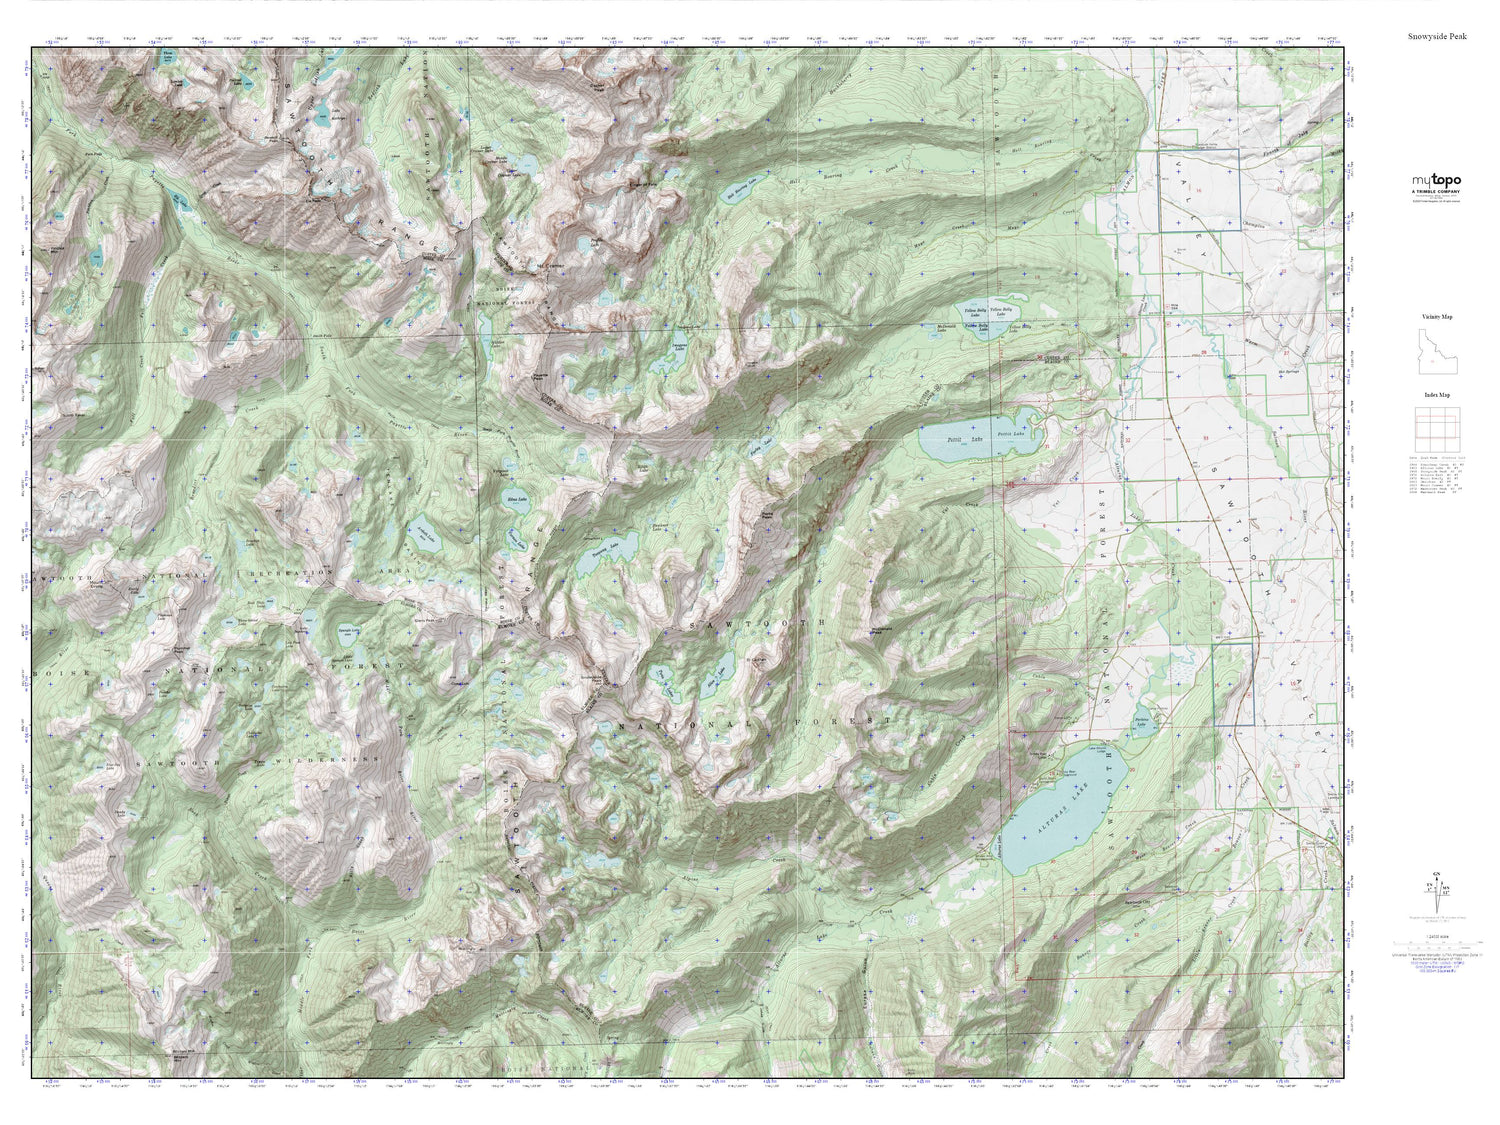 Snowyside Peak MyTopo Explorer Series Map Image